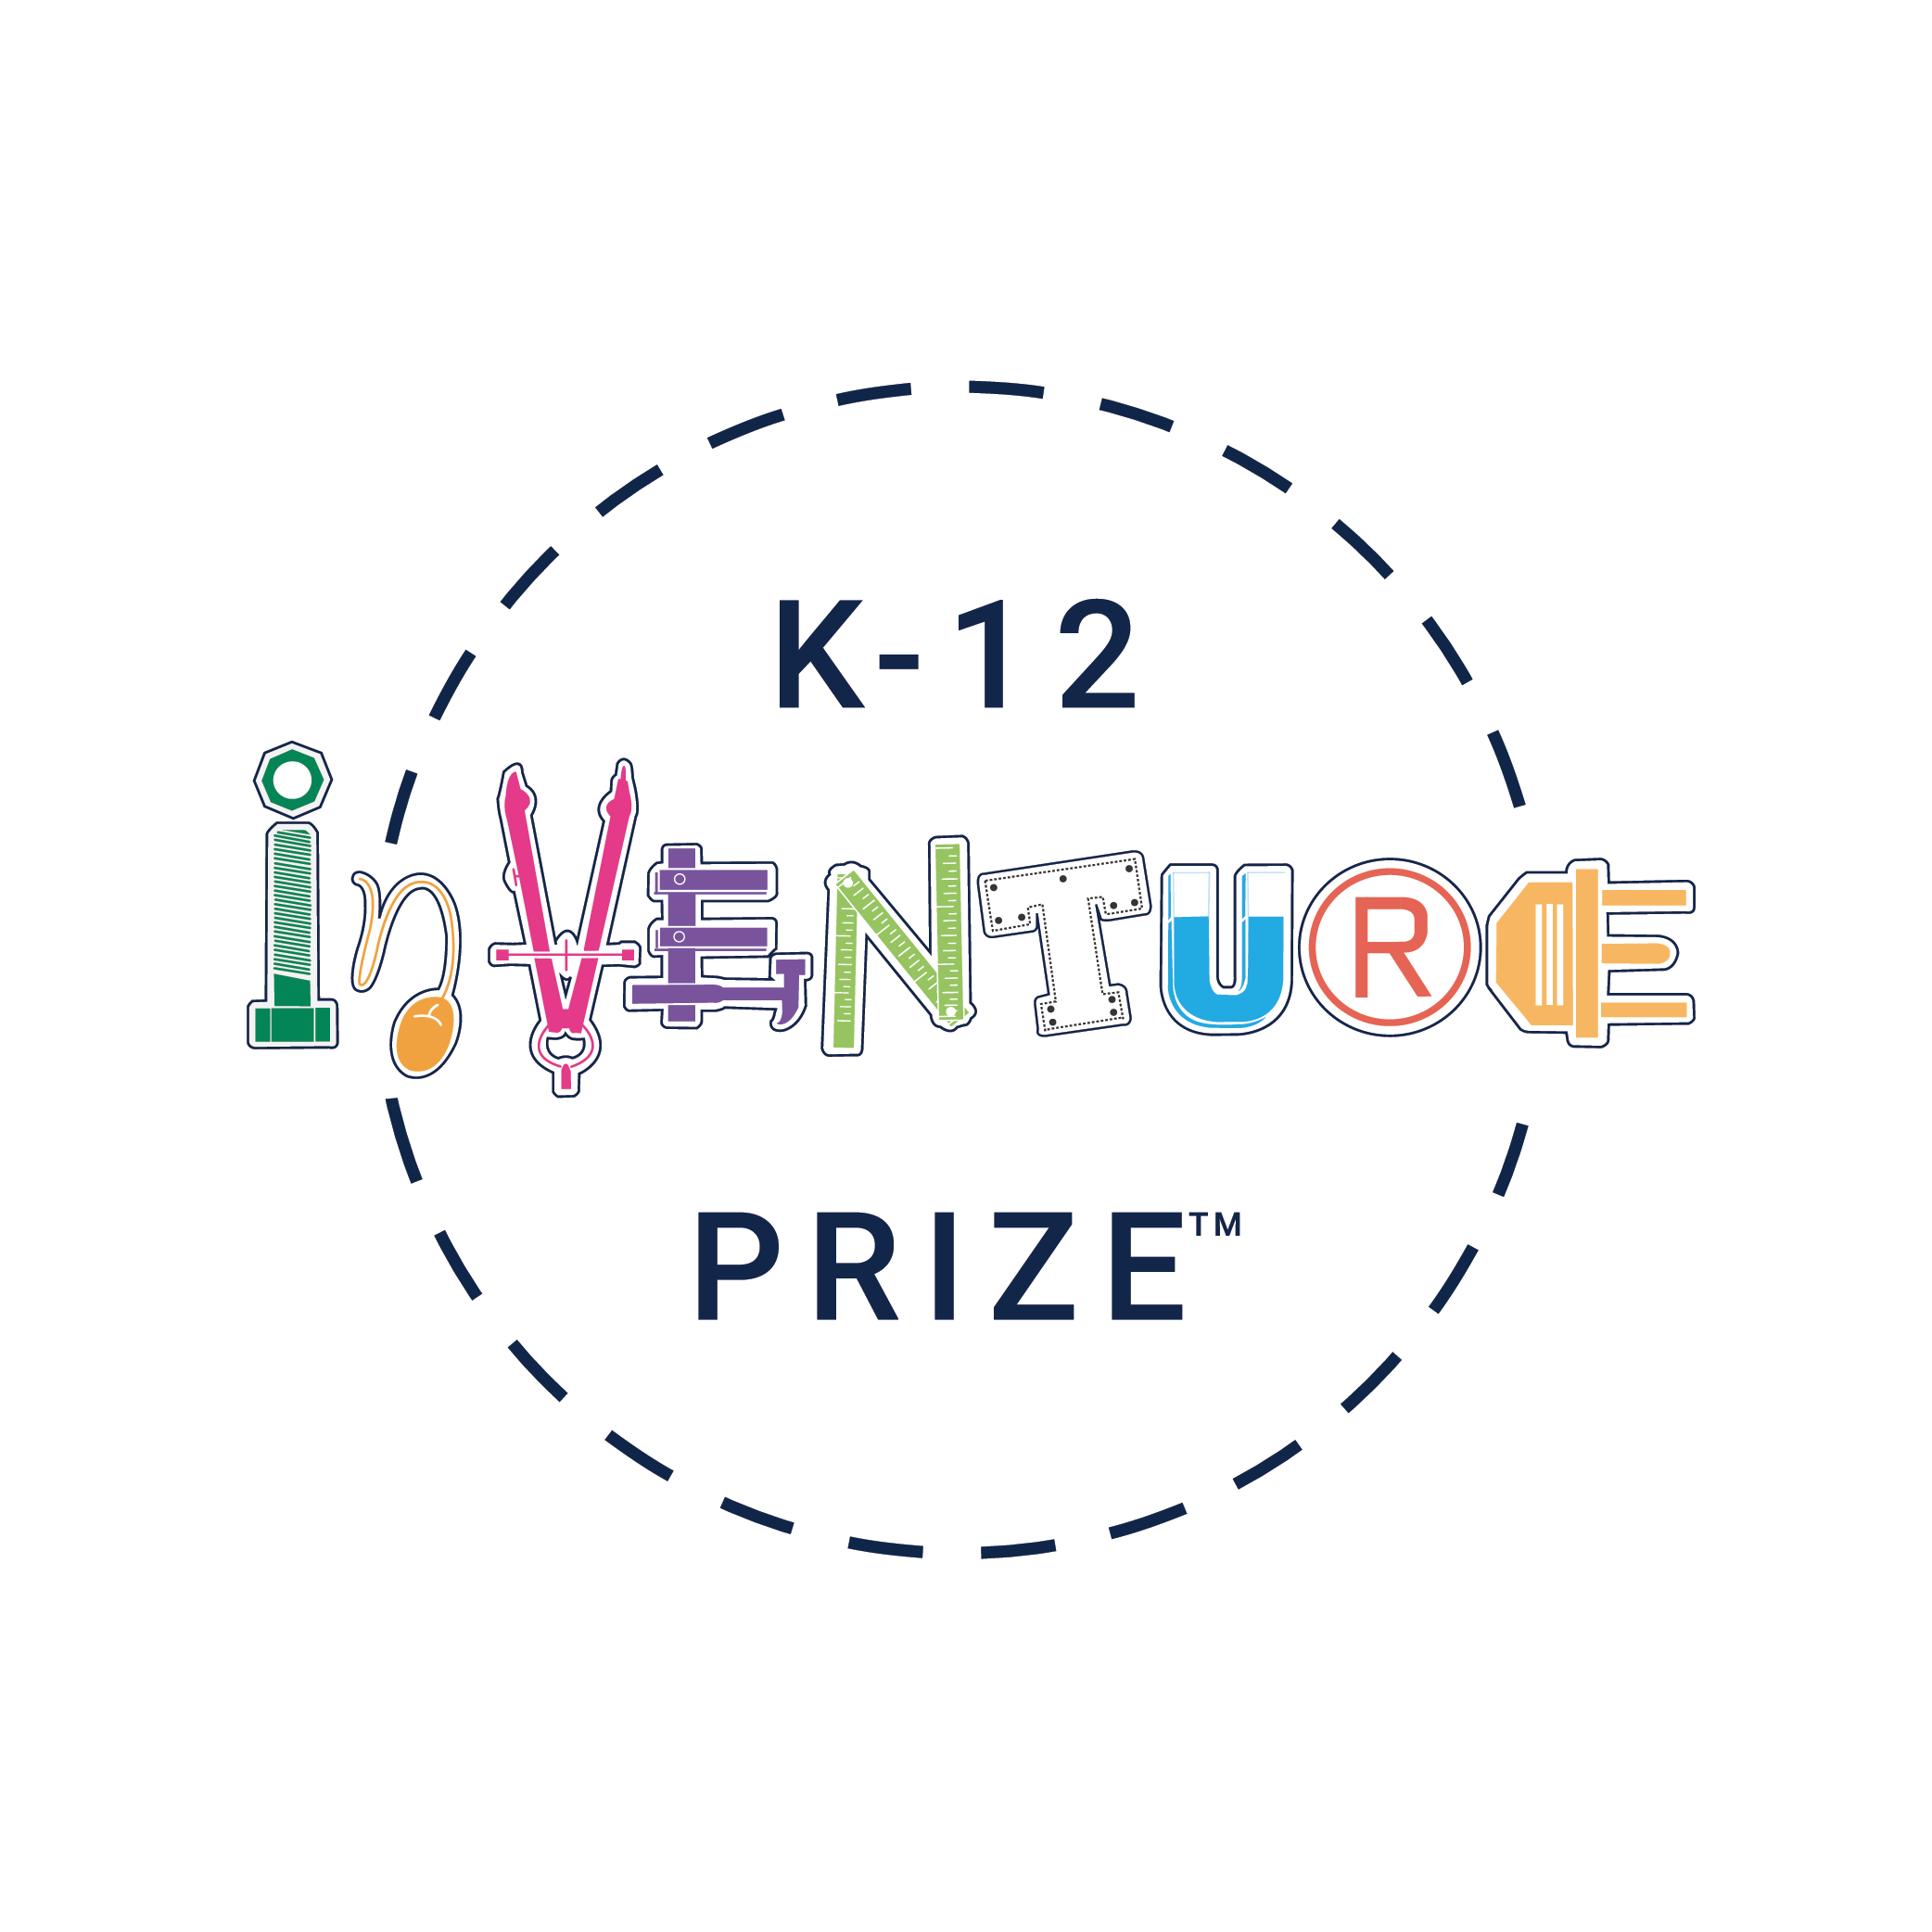 Image of K-12 InVenture Prize trademark (round version)